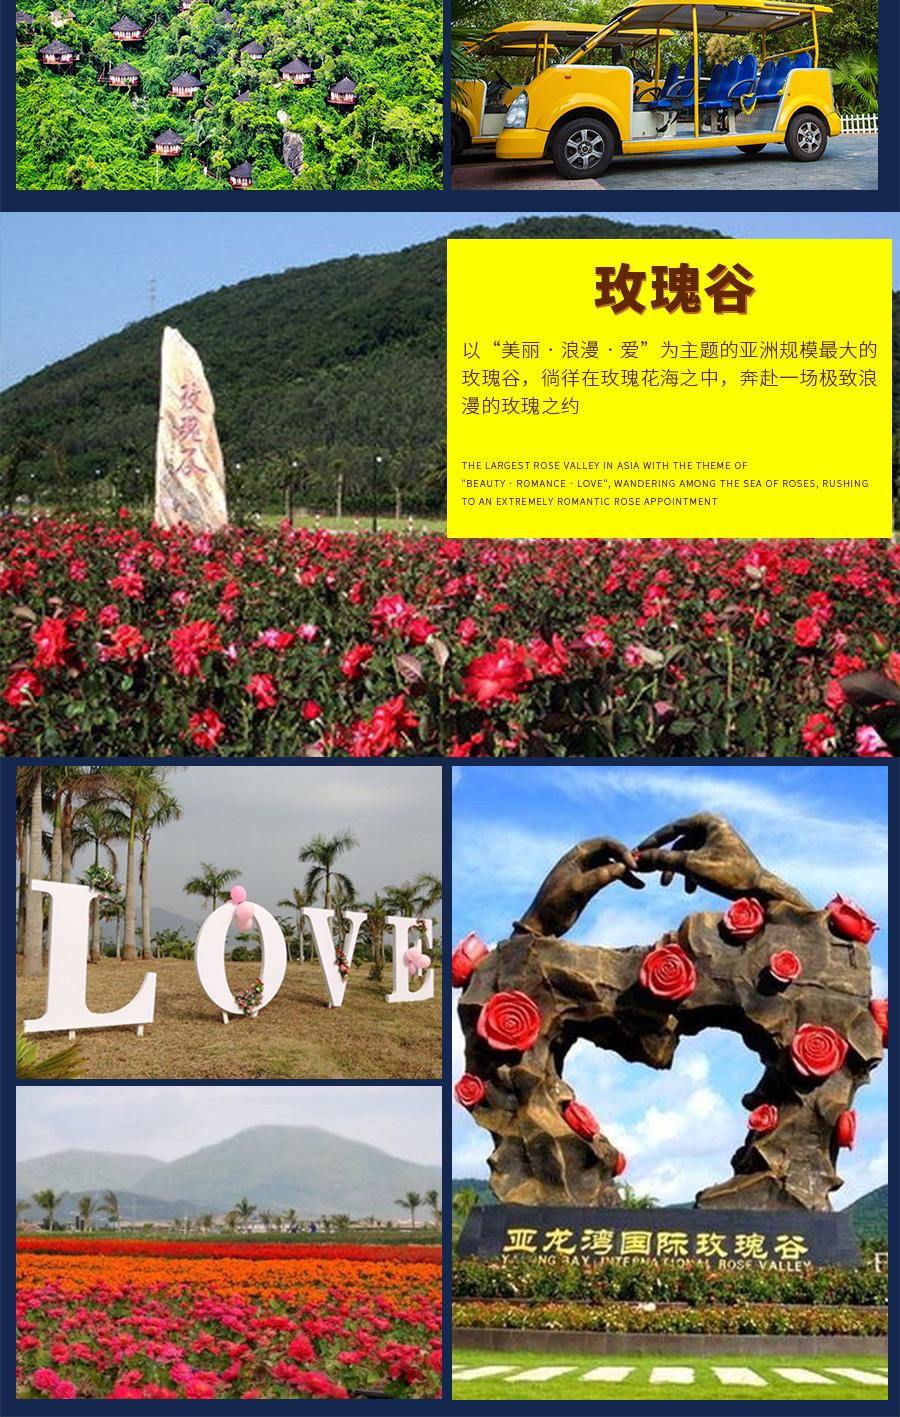 亚龙湾国际玫瑰谷 南山佛教文化苑